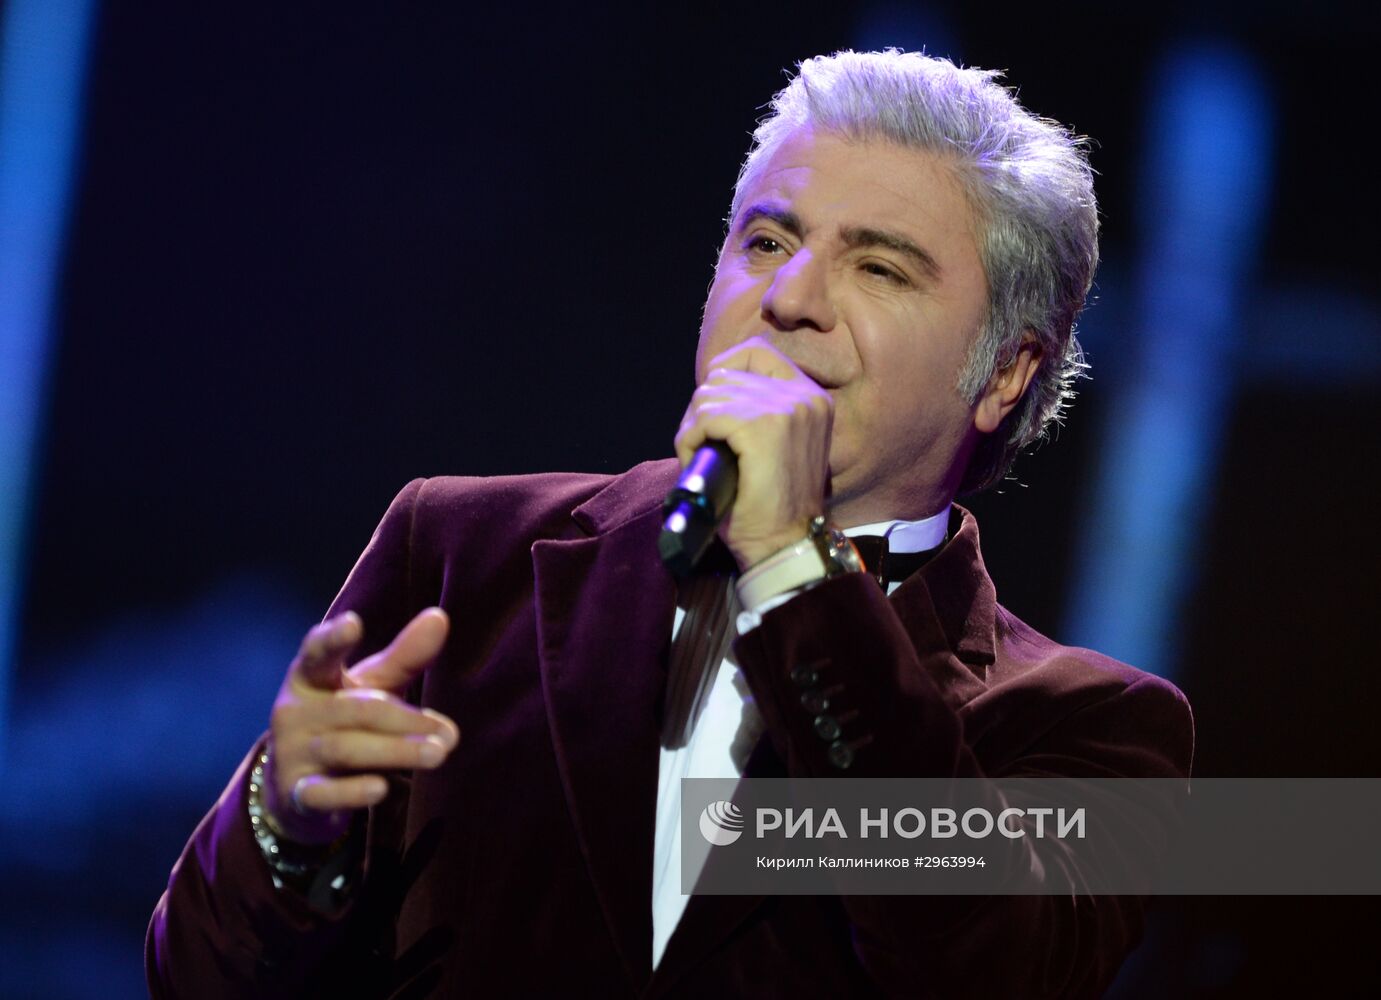 Концерт "25 лет тишины", посвященный памяти певца Игоря Талькова